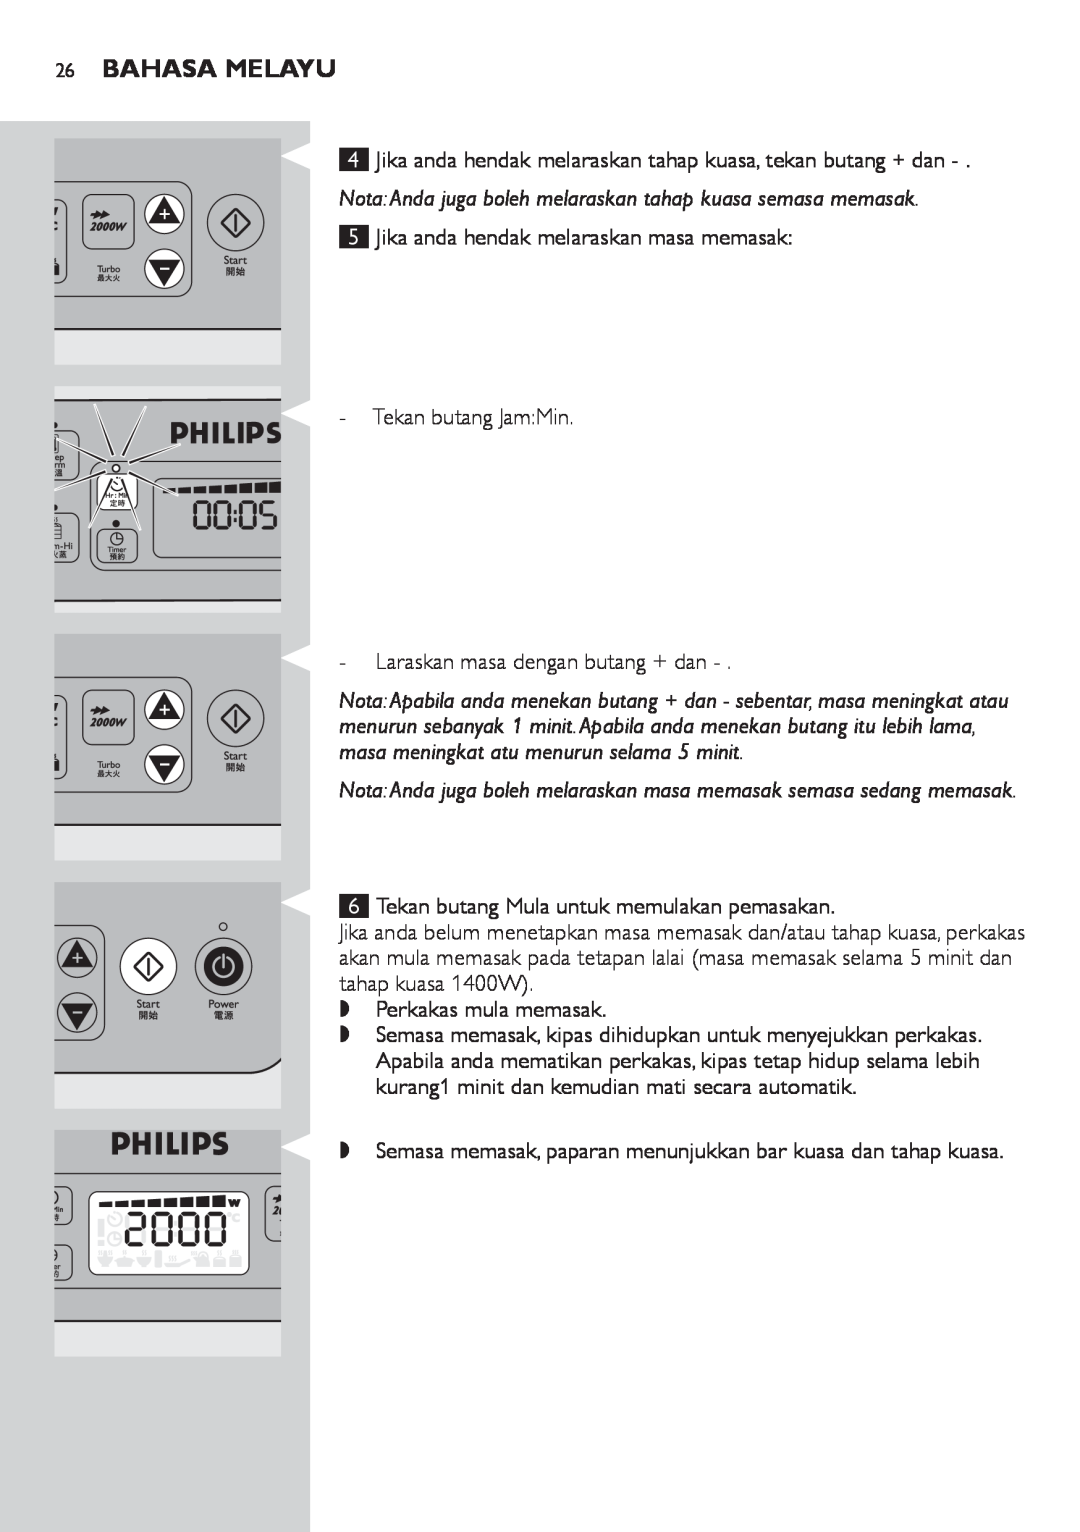 Philips HD4918 manual Bahasa Melayu, Jika anda hendak melaraskan masa memasak Tekan butang JamMin 